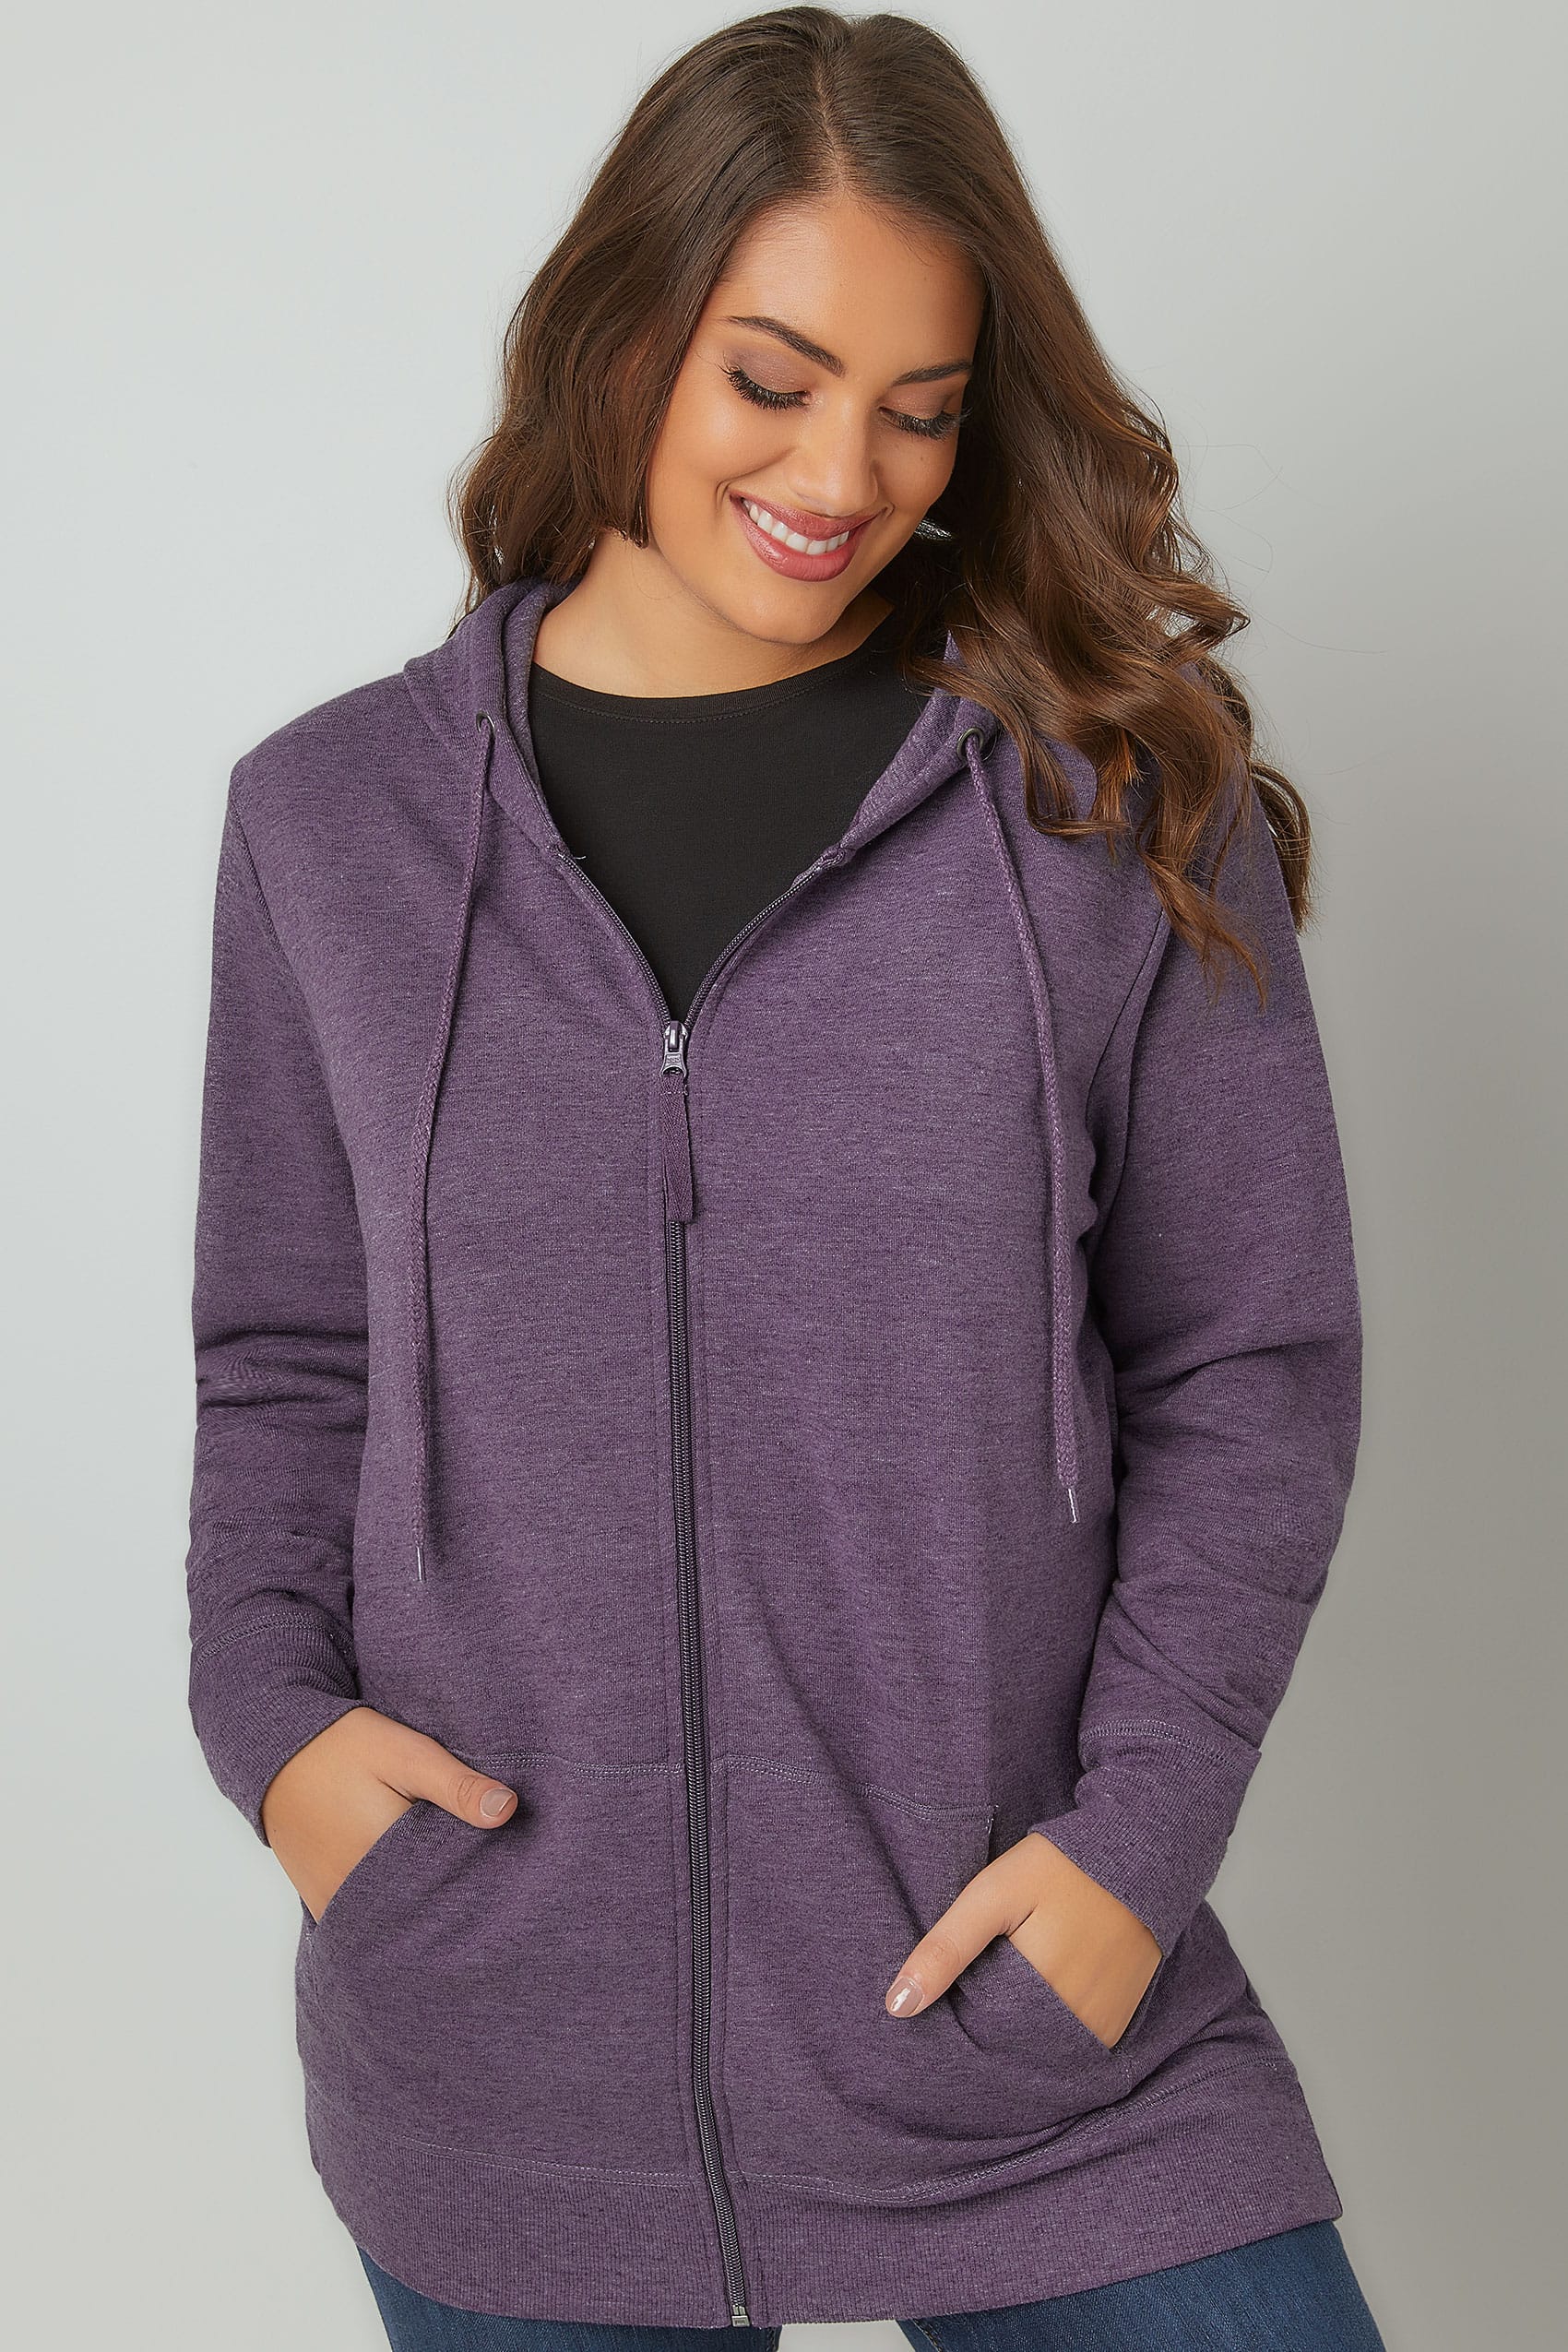 royal purple hoodie